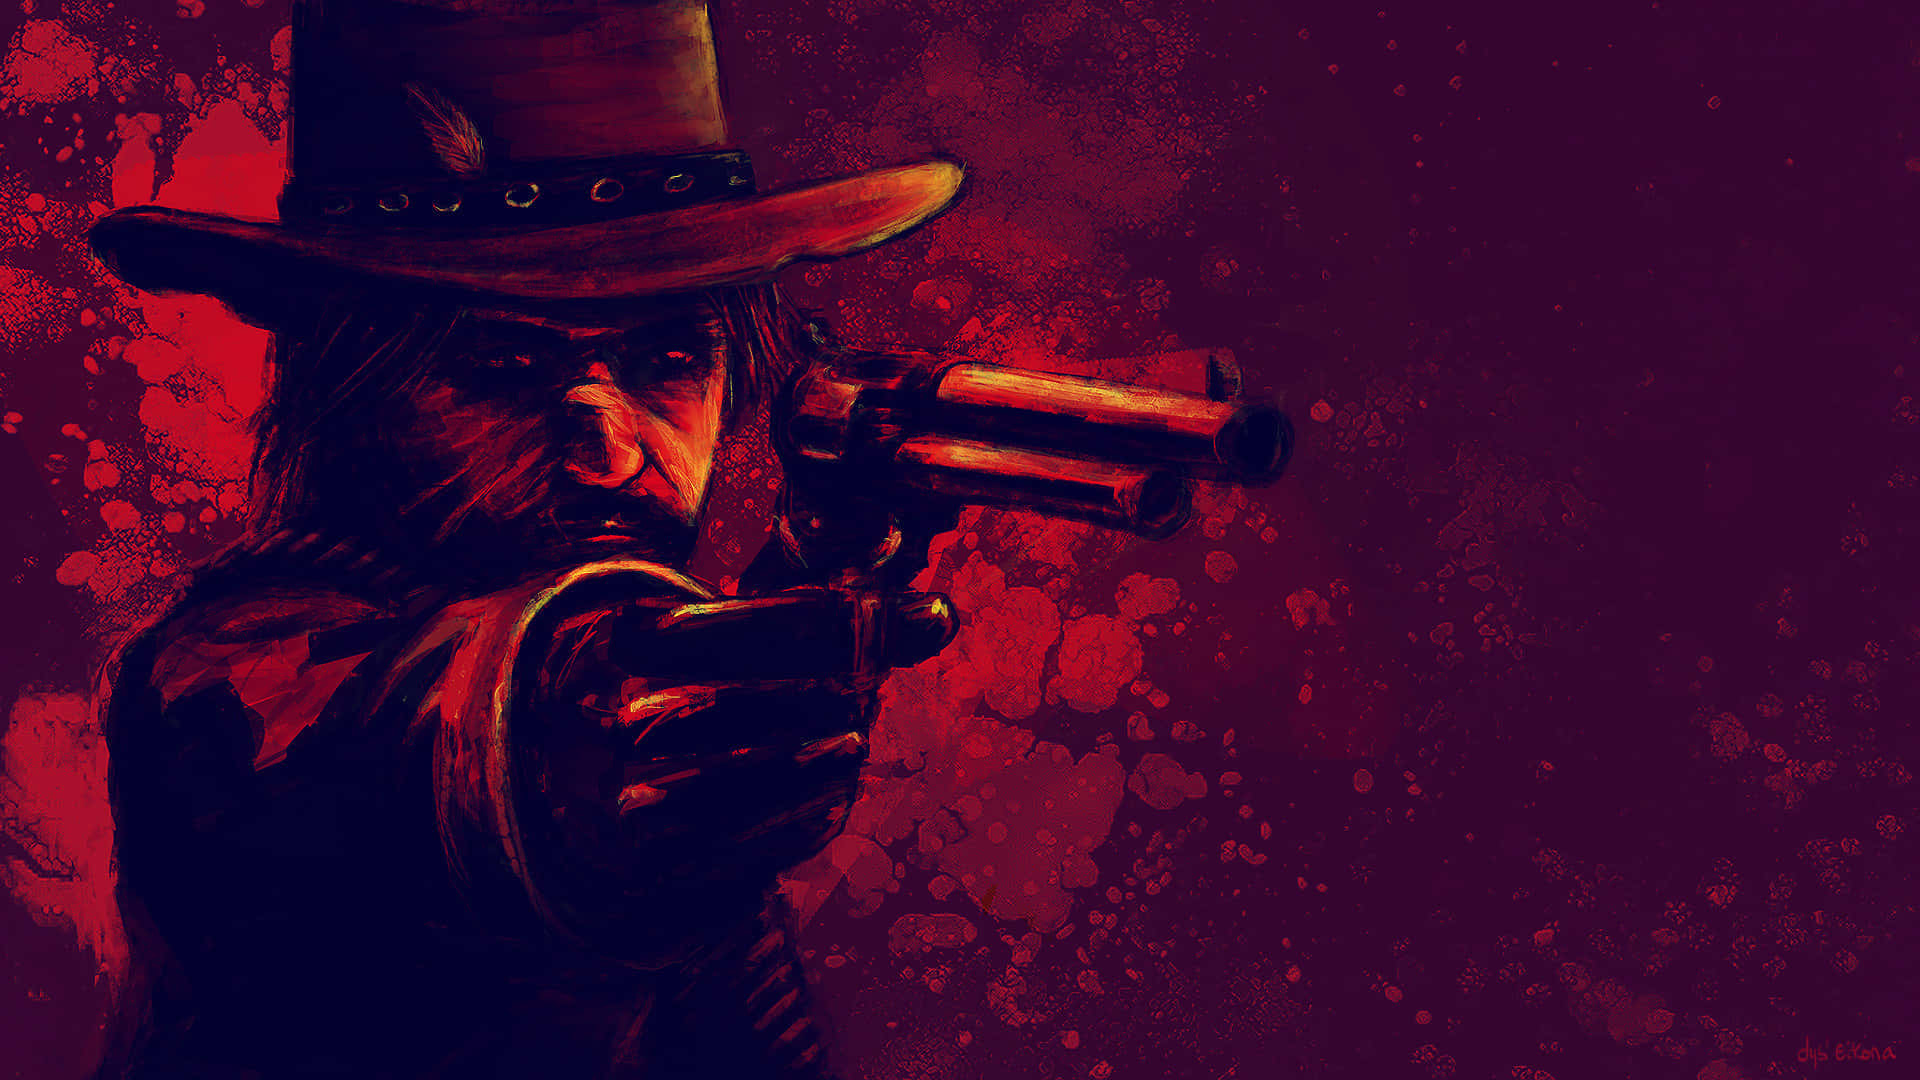 Best Red Dead Redemption 2 John Marston Pointing A Gun Background